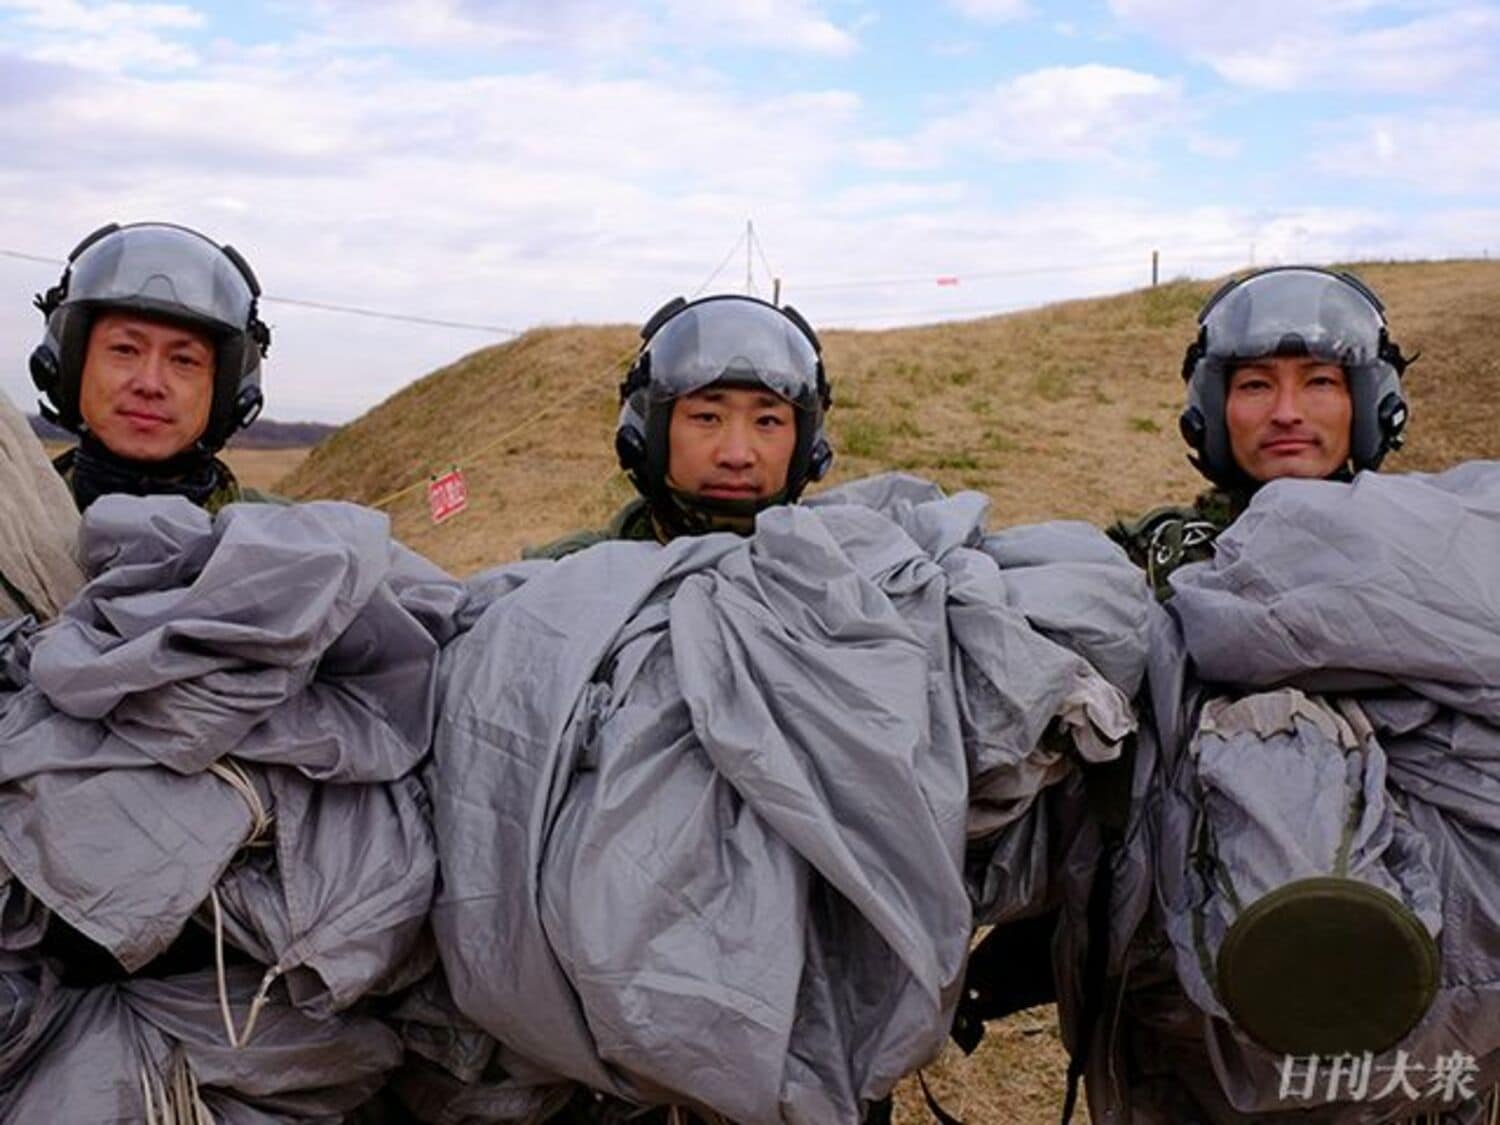 陸上自衛隊×グリーンベレー「厳戒の降下訓練」に密着の画像